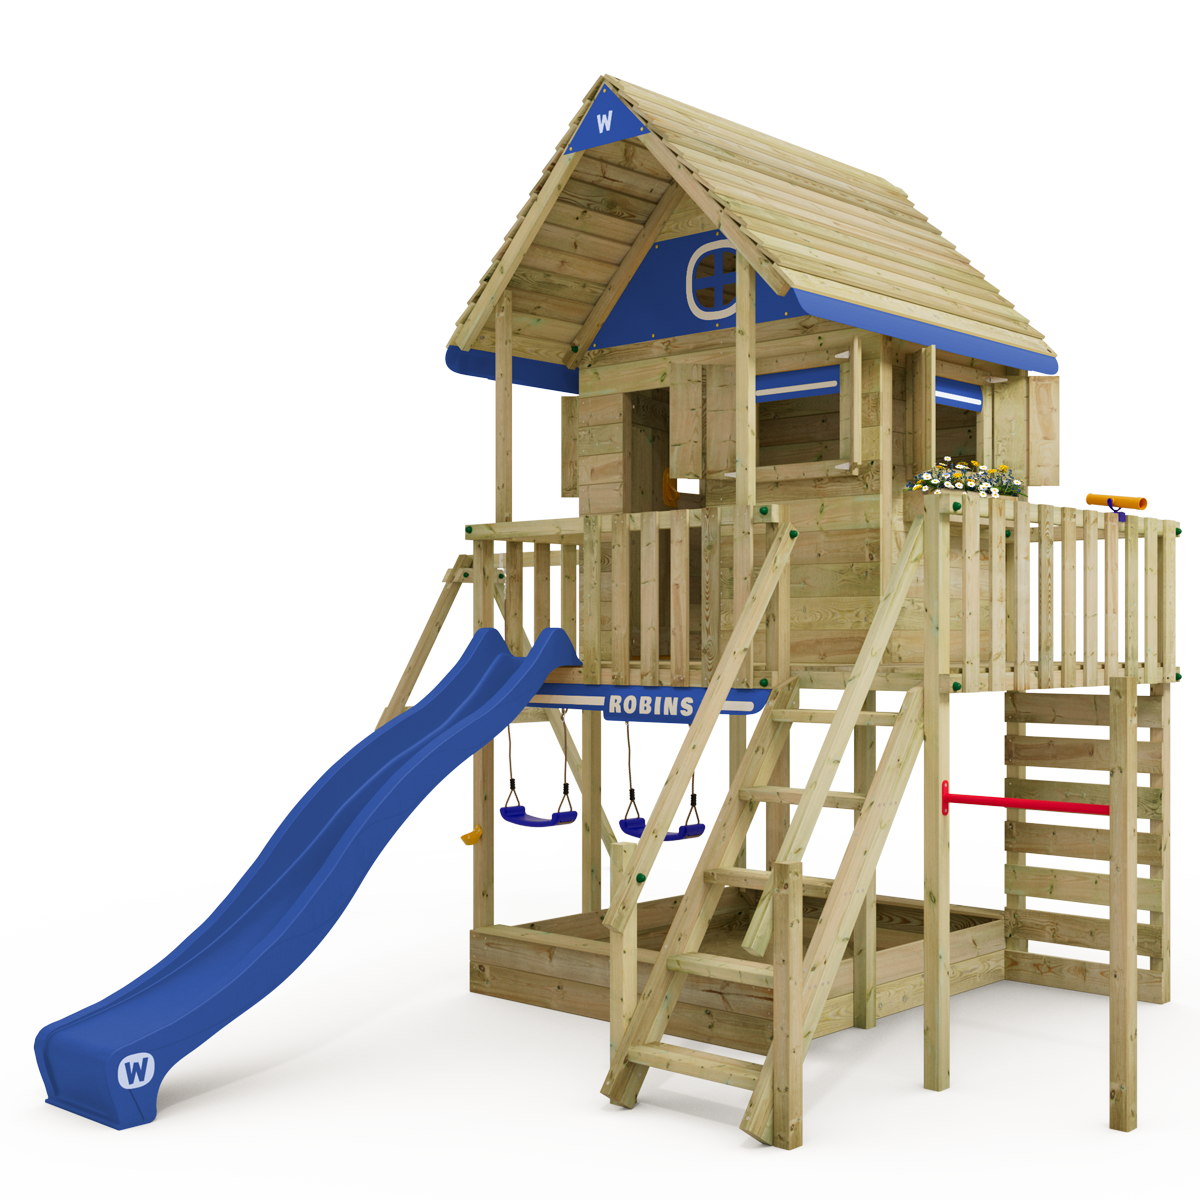 Wickey Smart PlayHouse tower playhouse